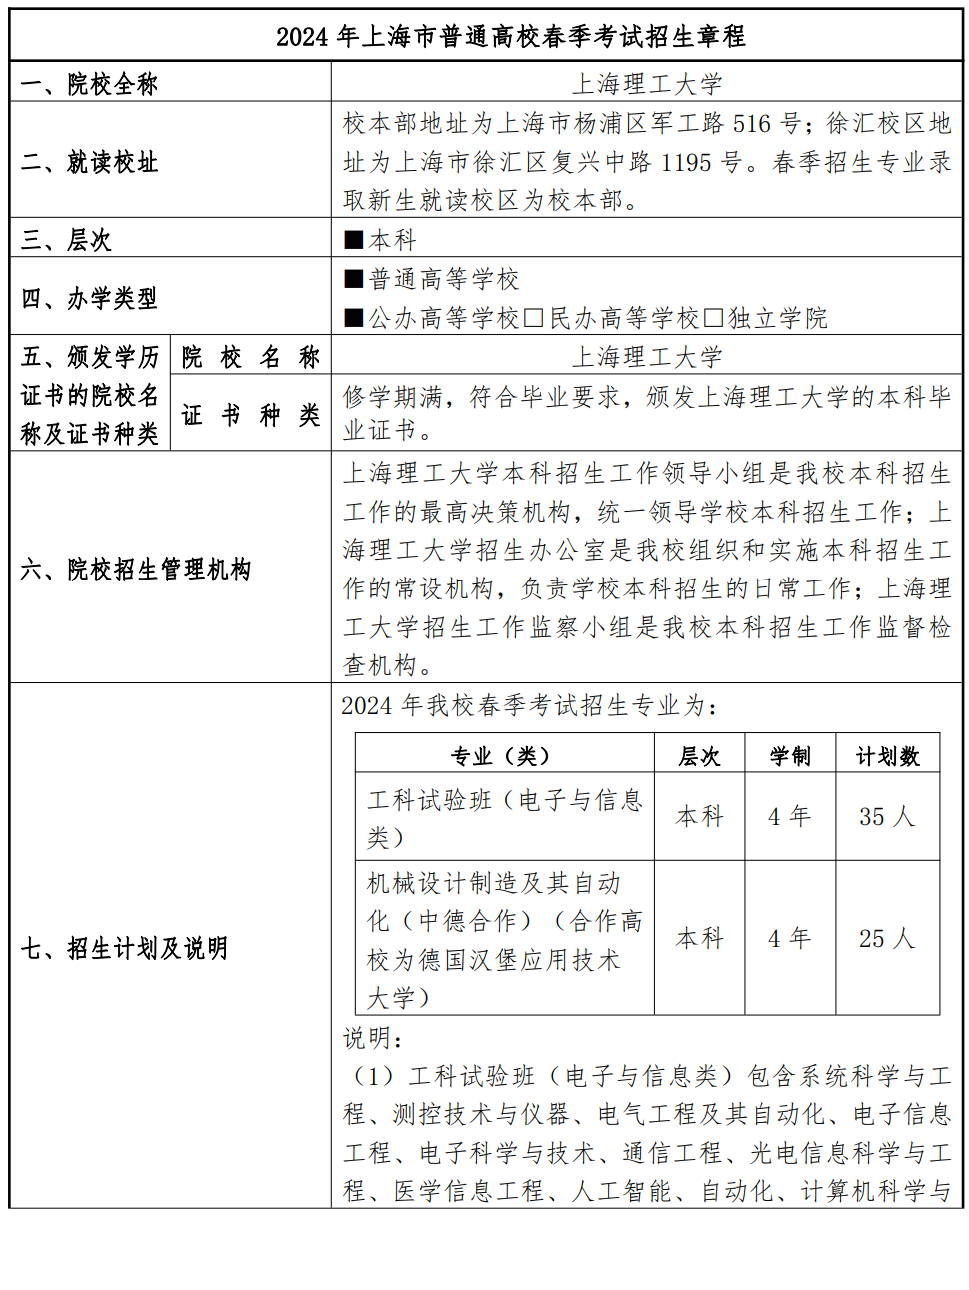 上海理工大学2024年春季高考招生章程